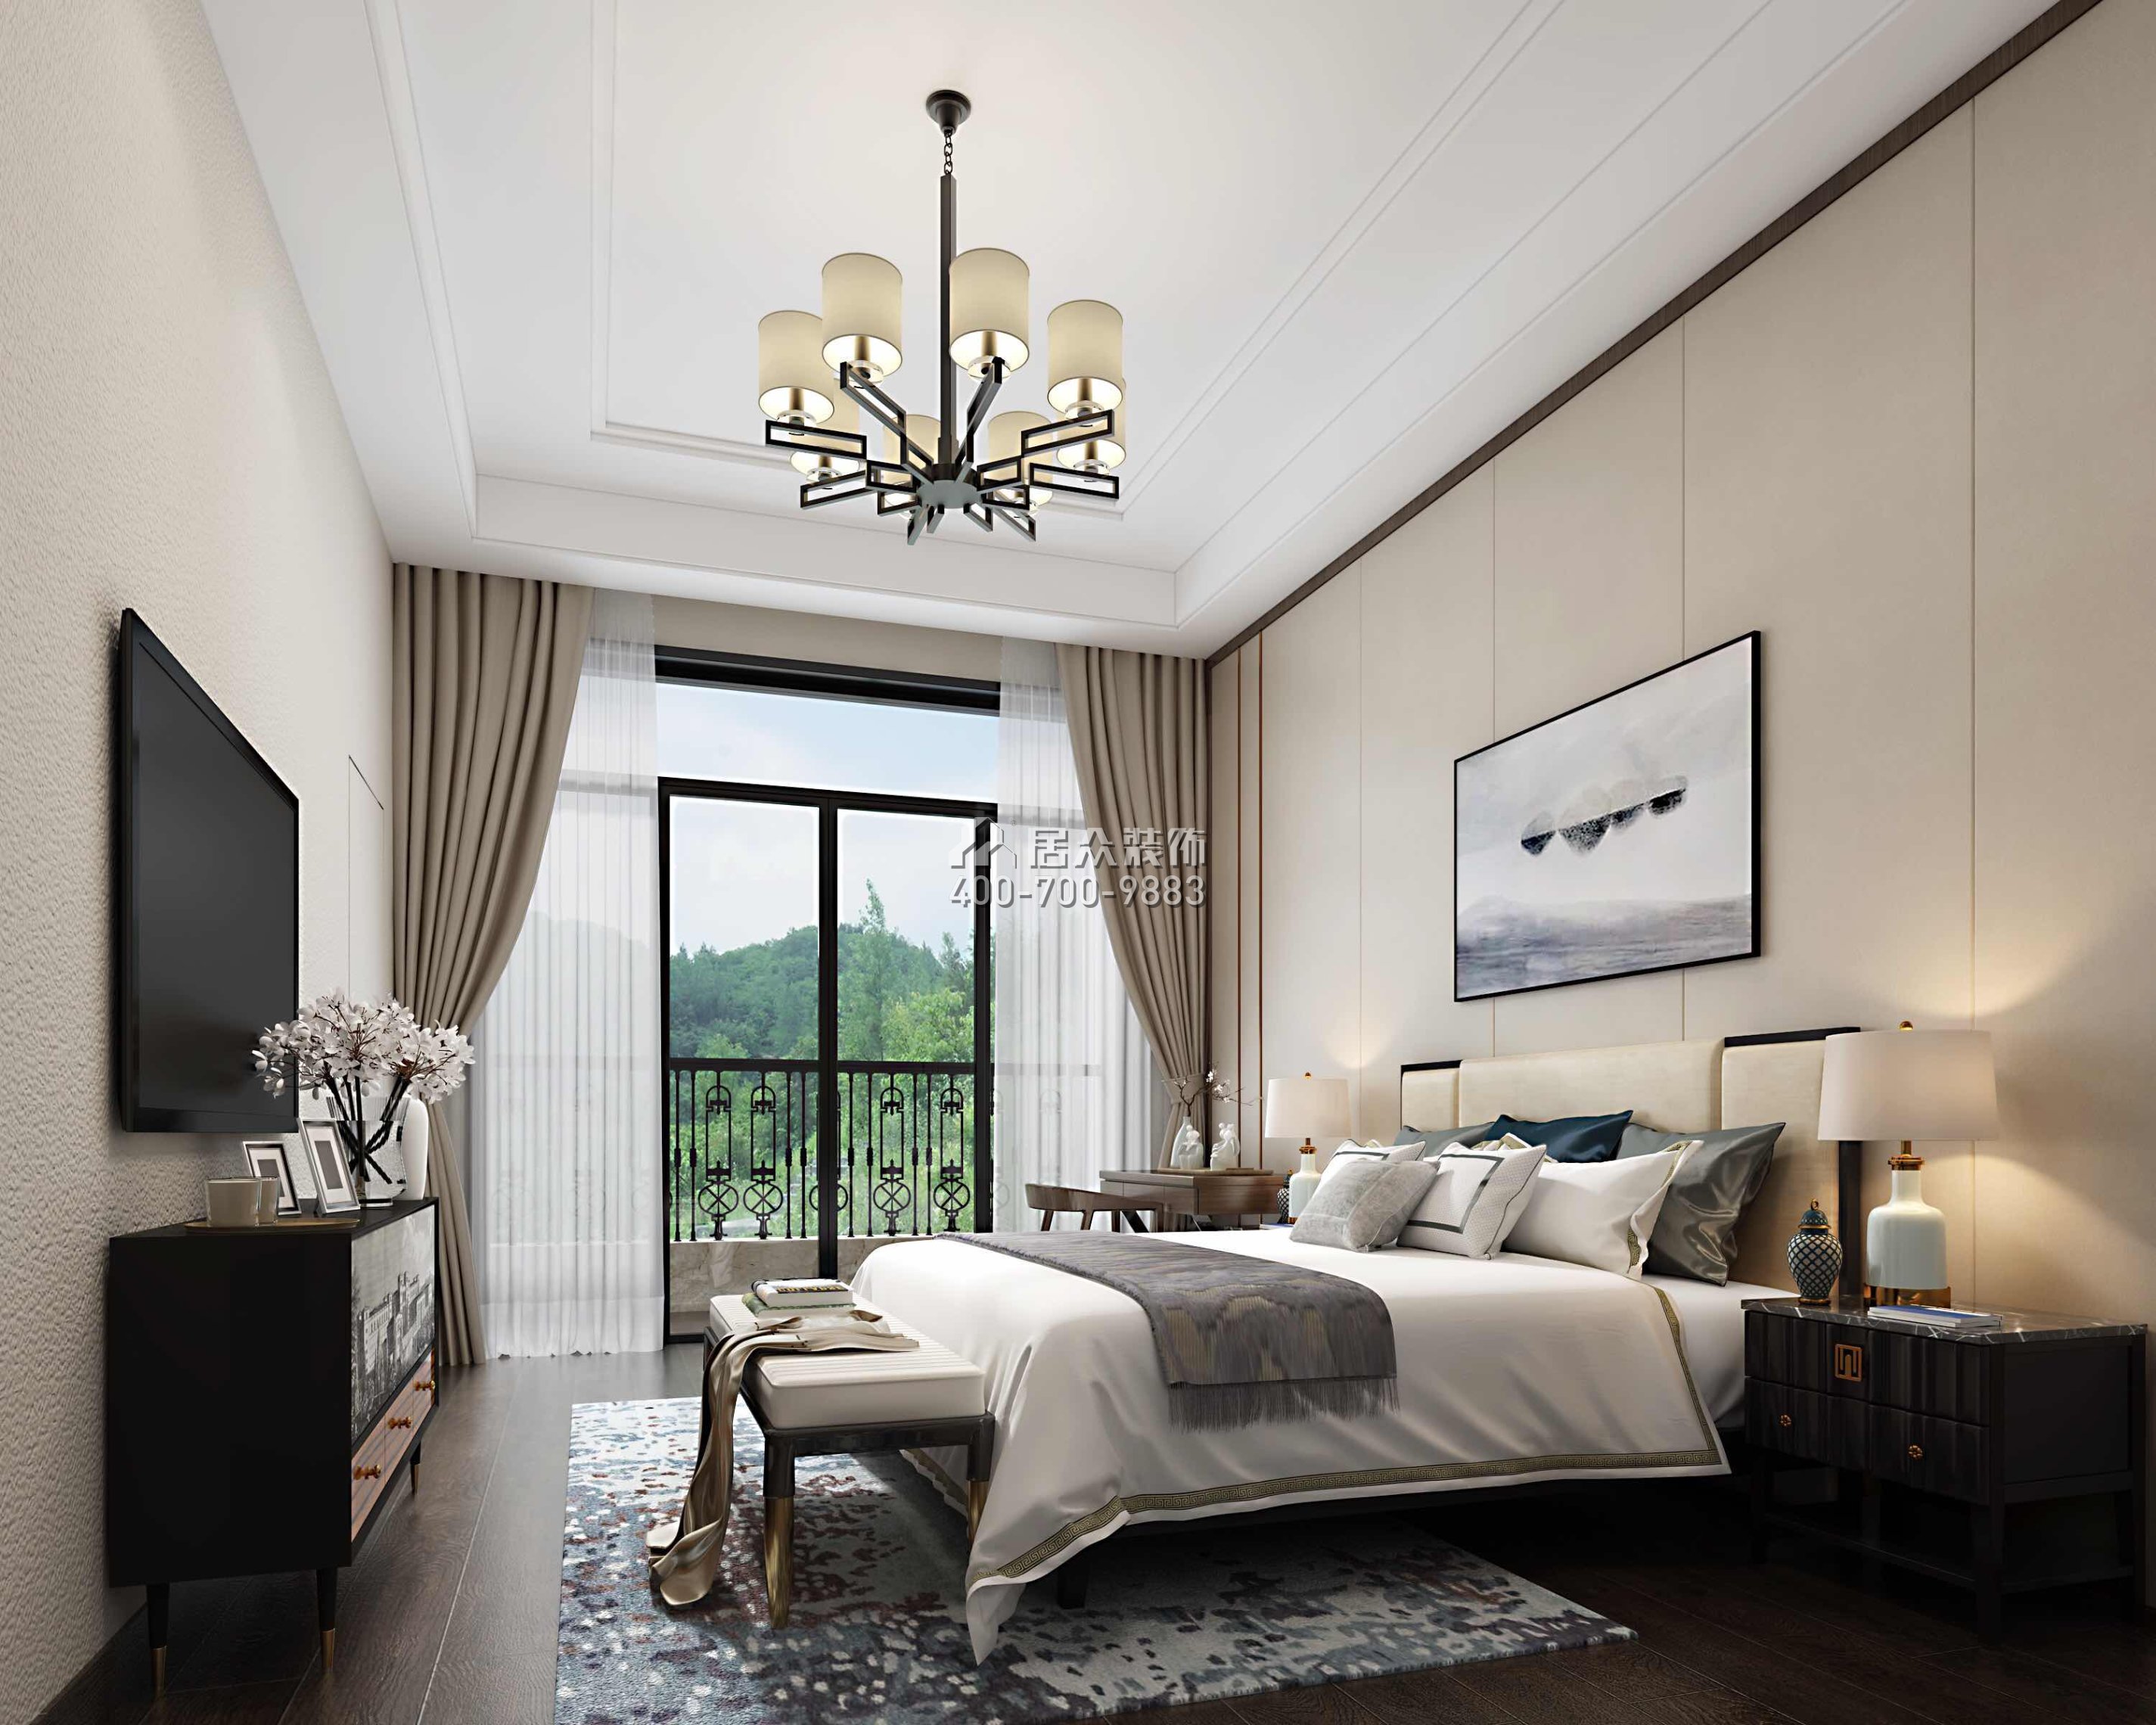 雅居樂白鷺湖300平方米中式風格平層戶型臥室裝修效果圖